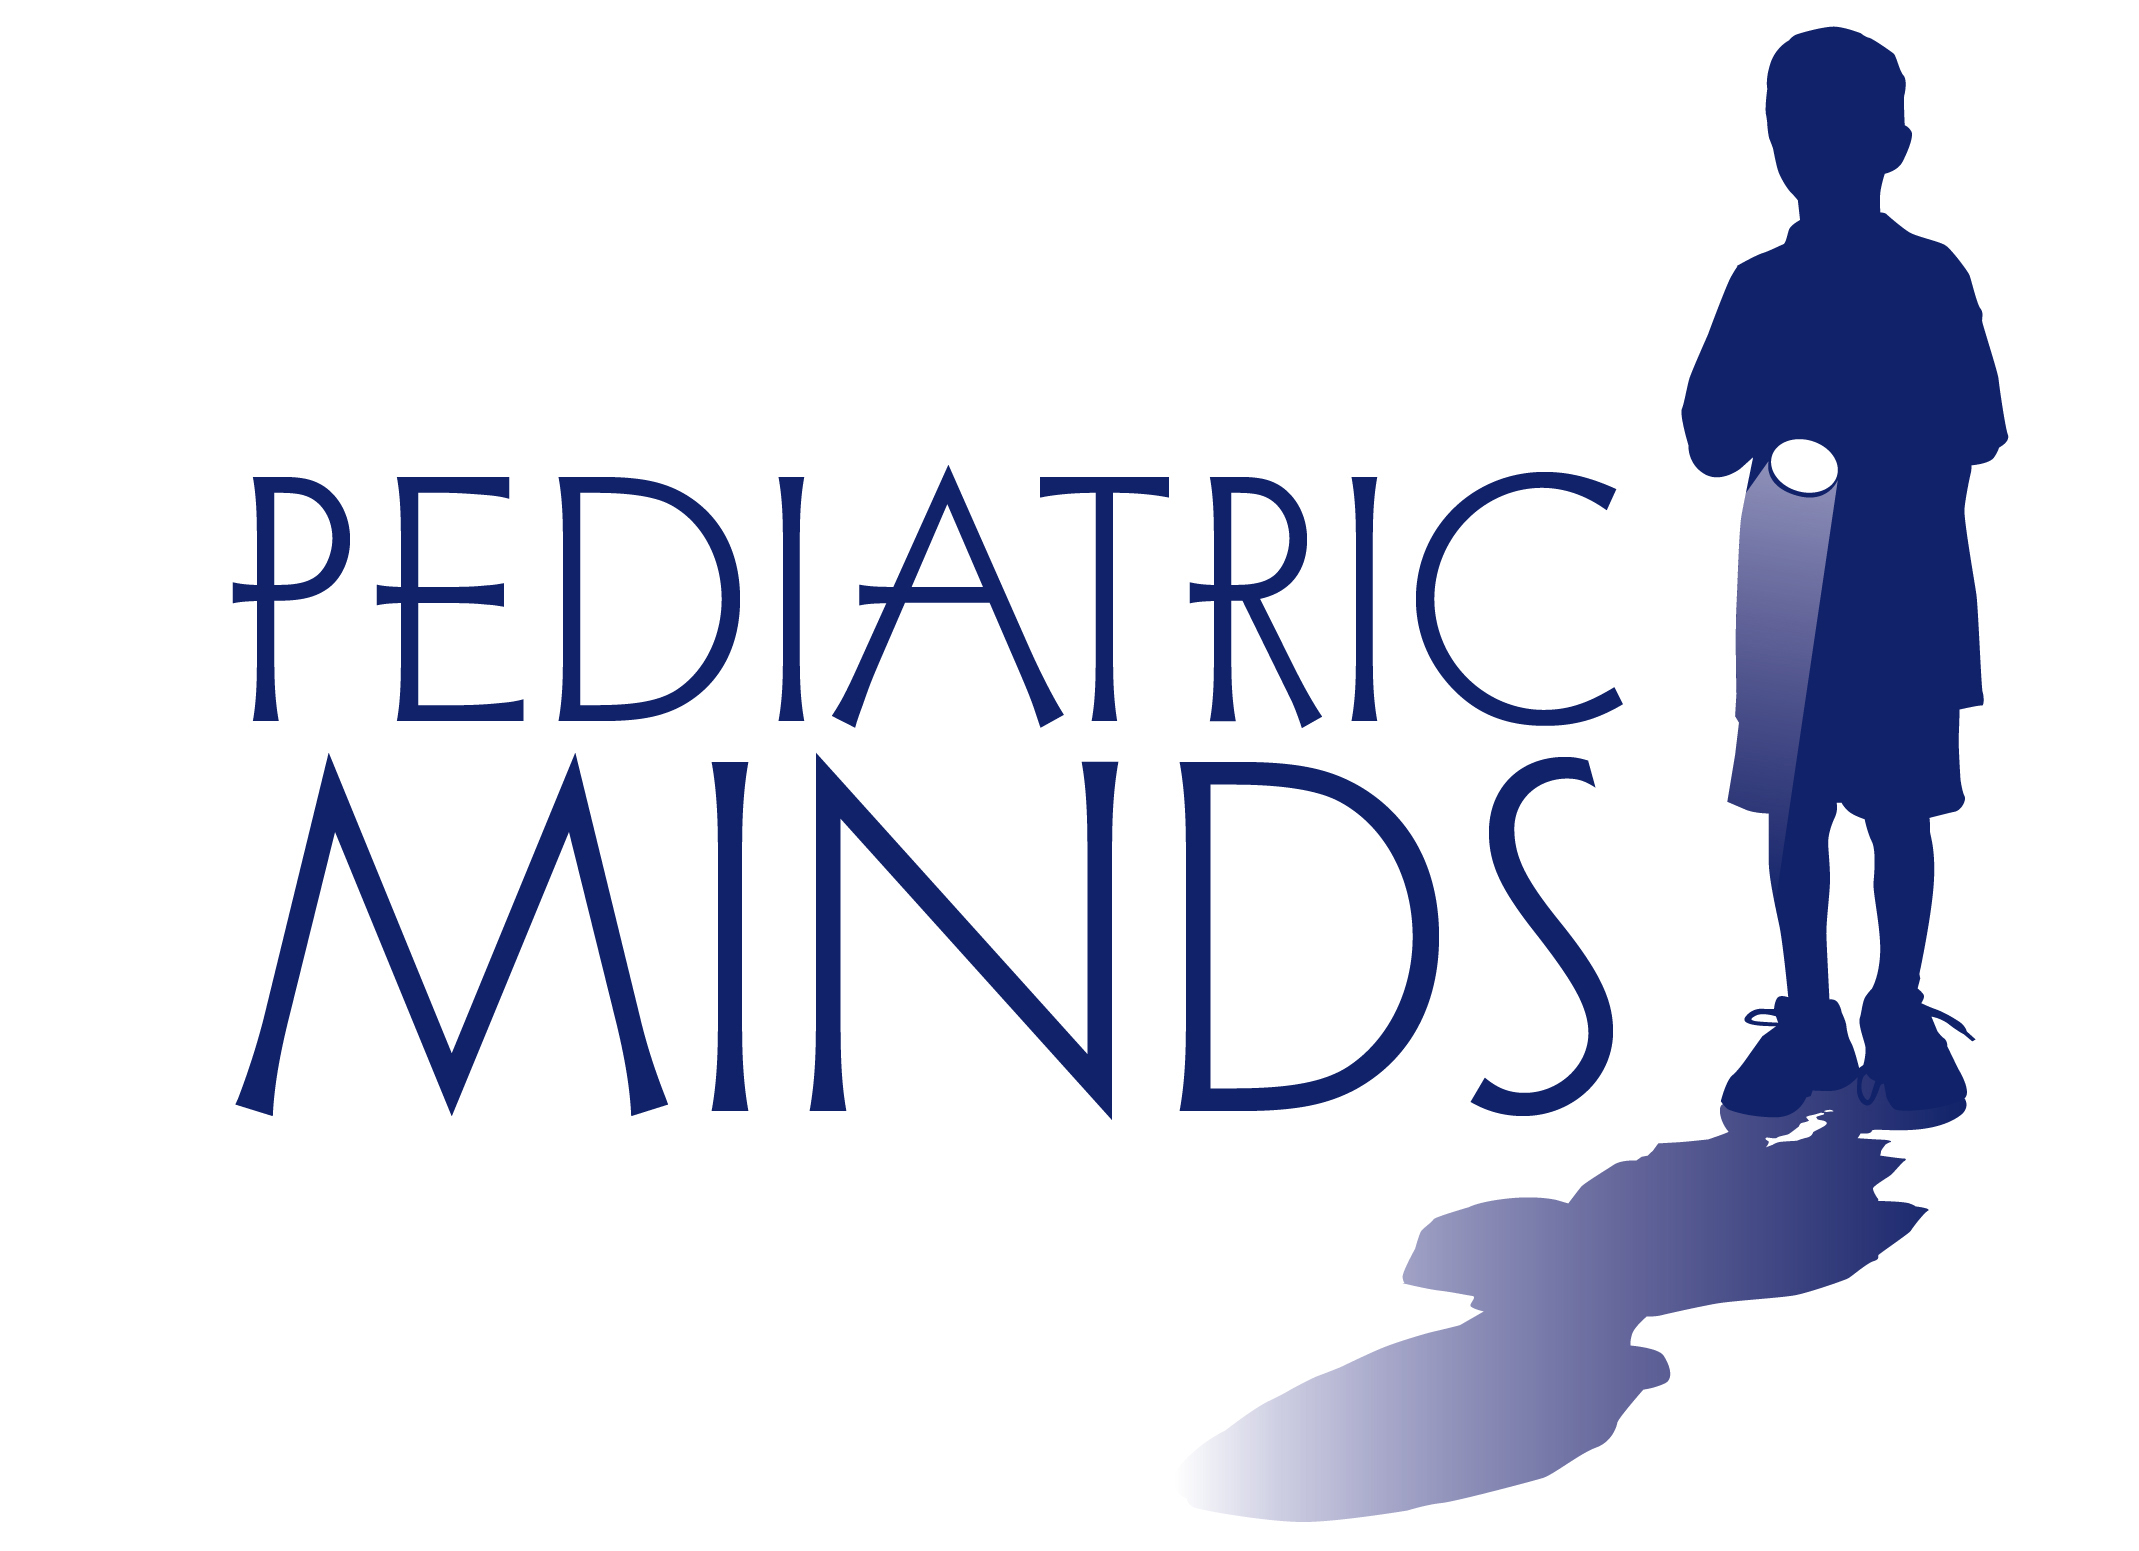 2. Pediatric Minds